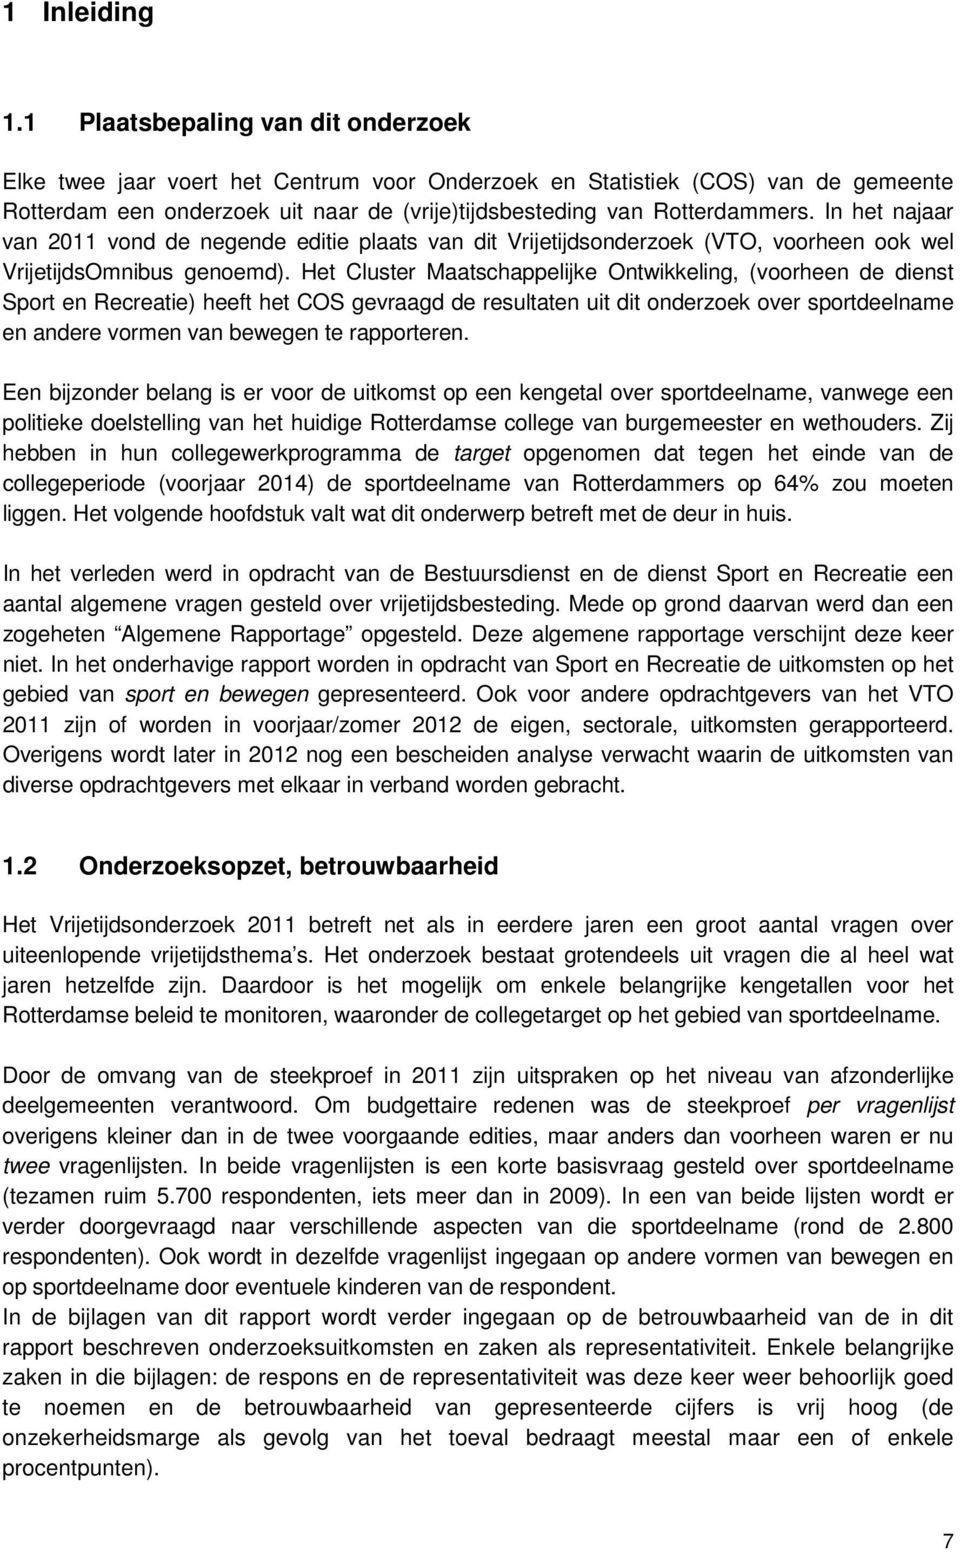 In het najaar van 2011 vond de negende editie plaats van dit Vrijetijdsonderzoek (VTO, voorheen ook wel VrijetijdsOmnibus genoemd).